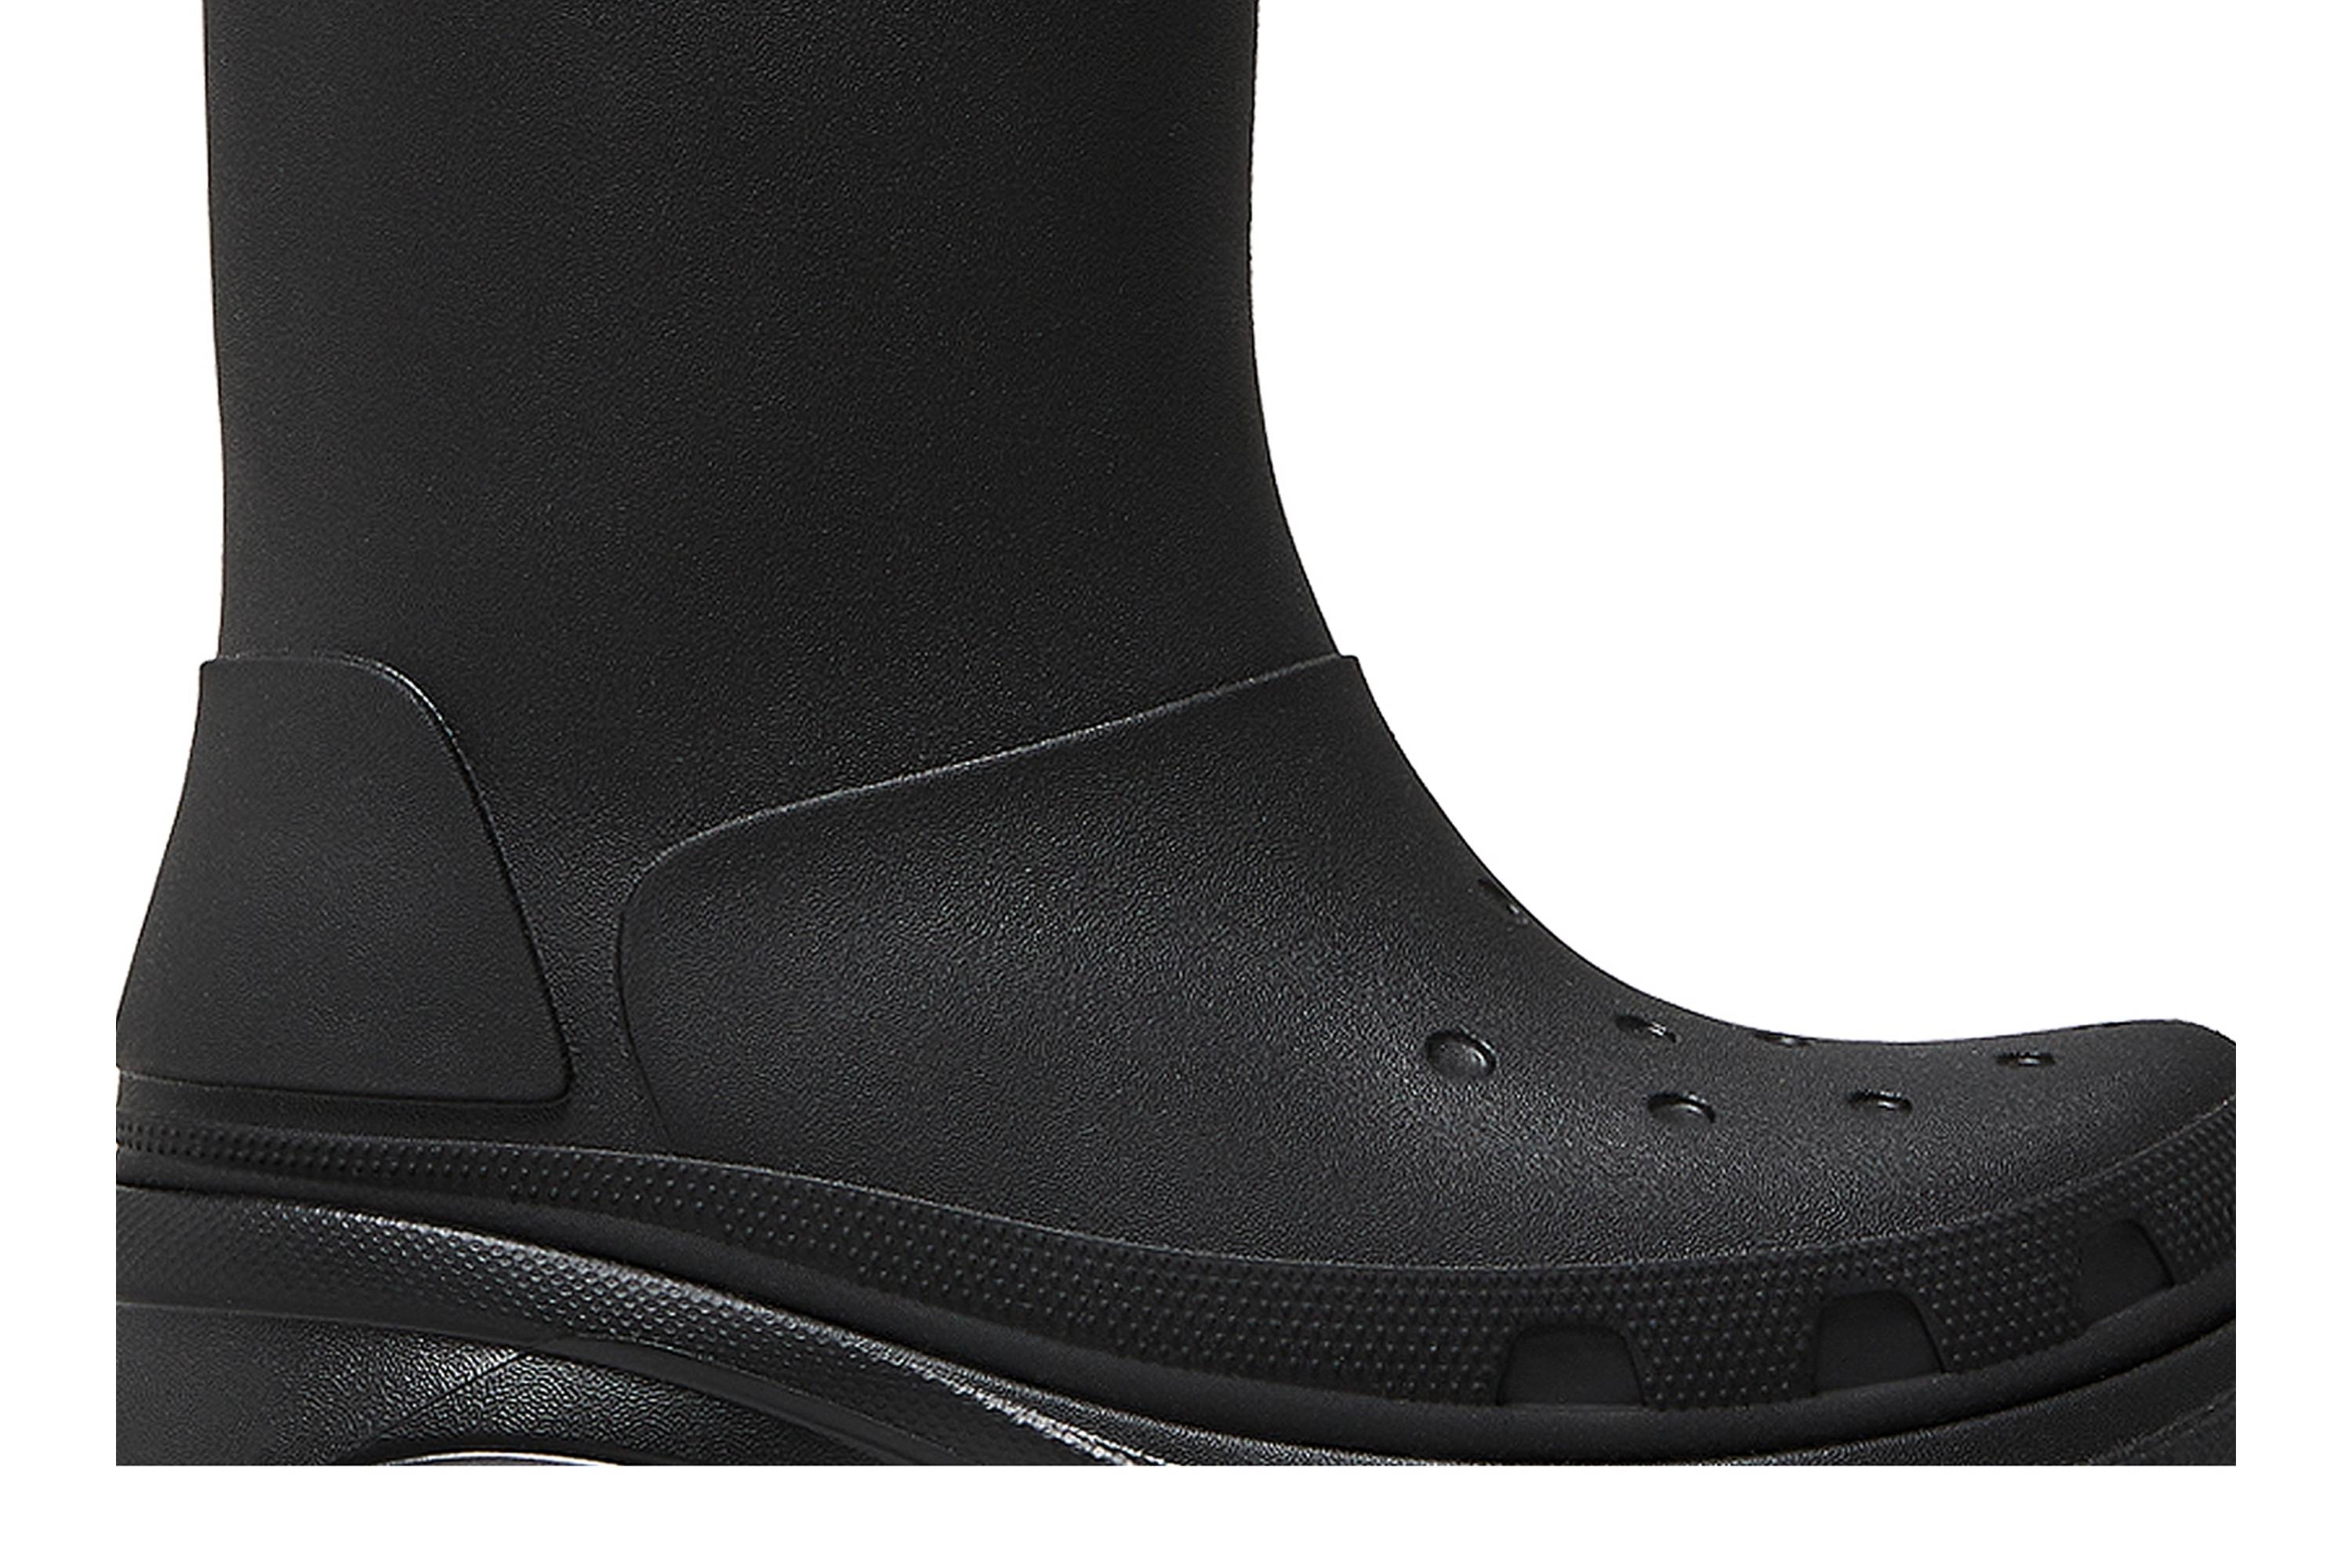 Crocs x Balenciaga Clog Boot 2.0 'Black' - 2